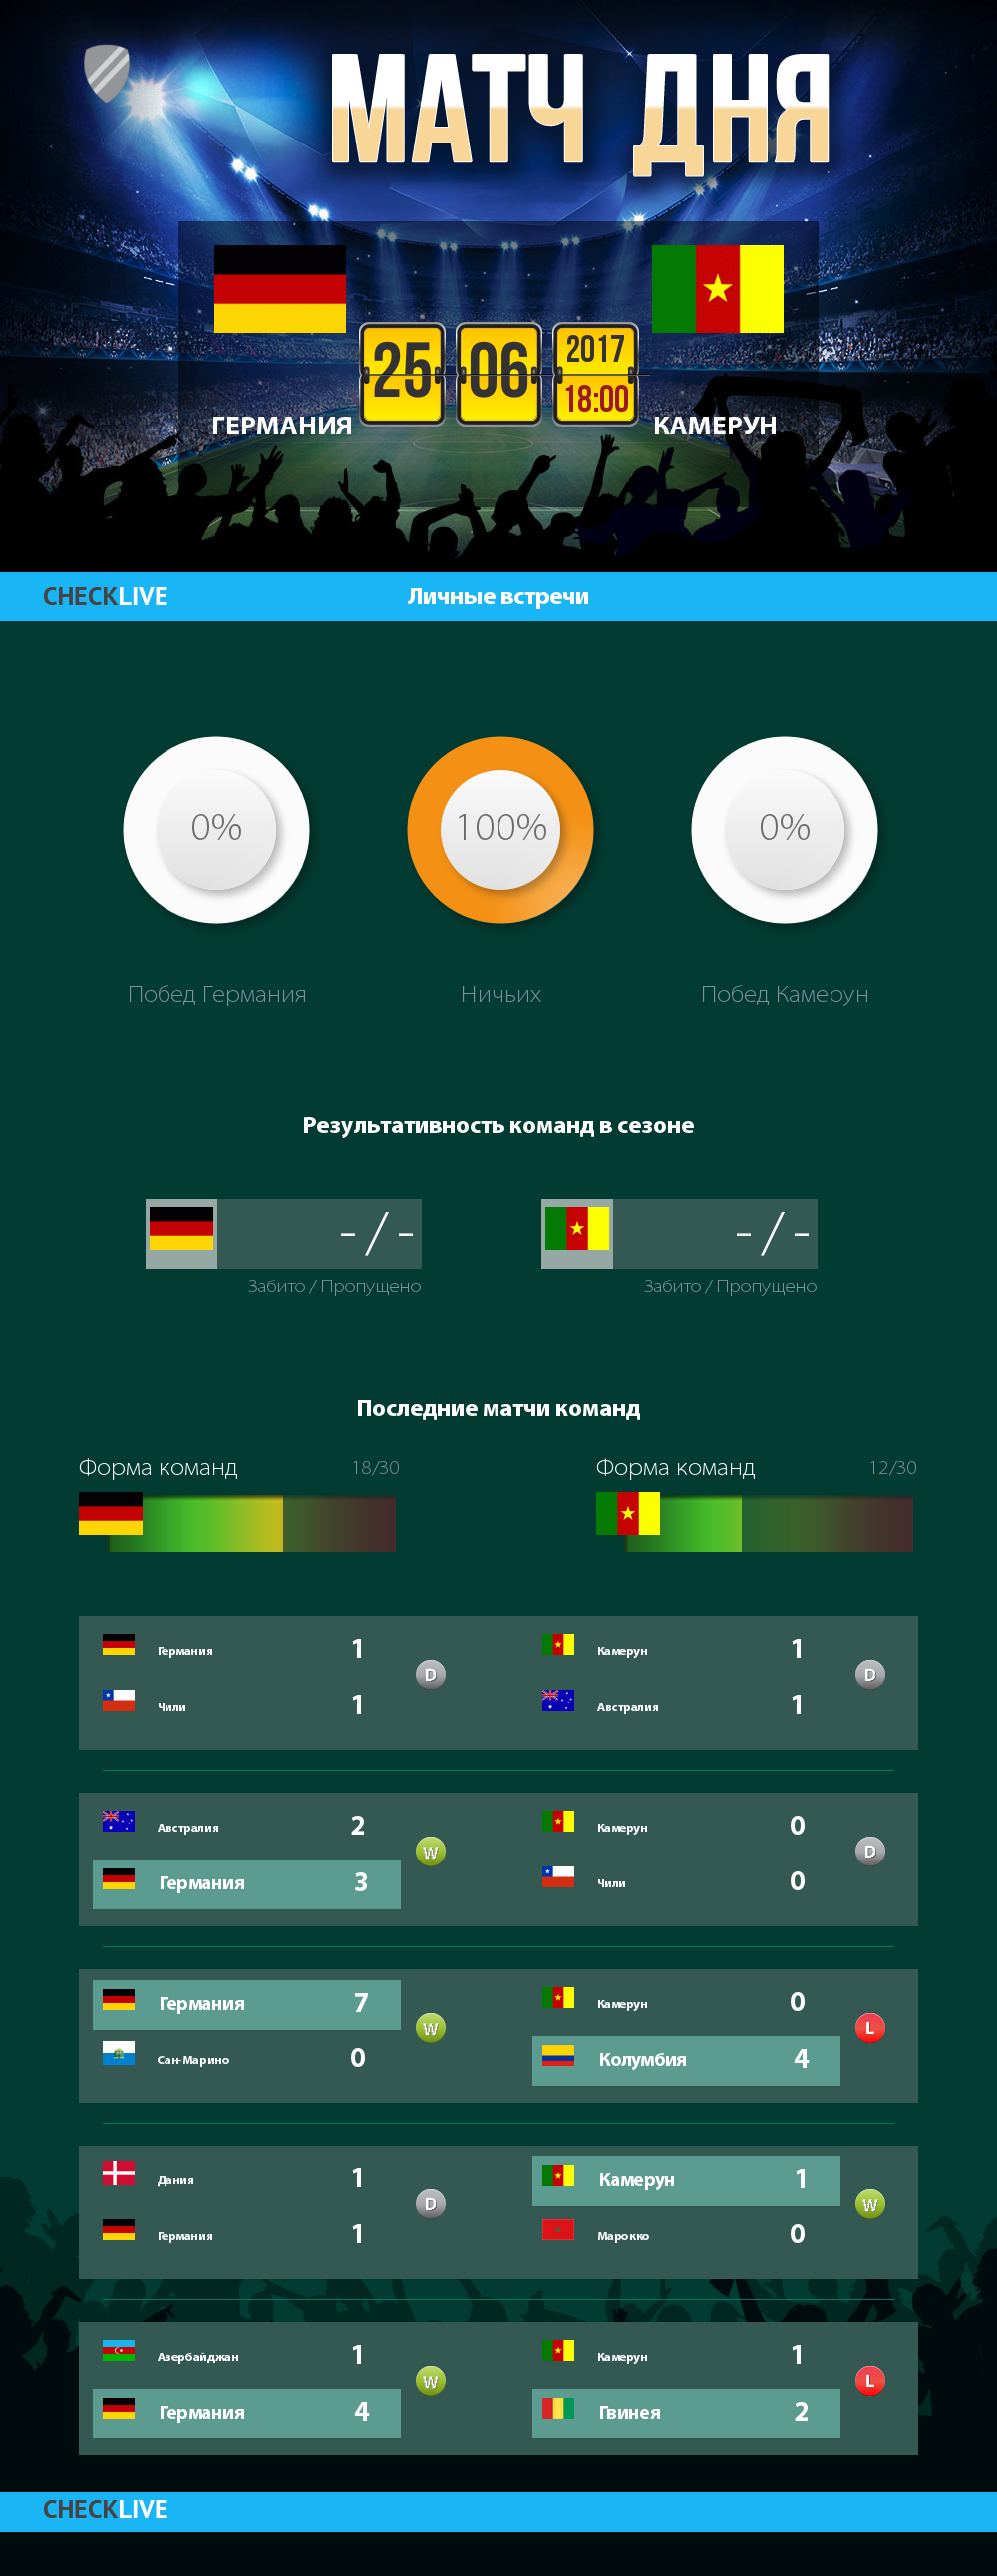 Инфографика Германия и Камерун матч дня 25.06.2017